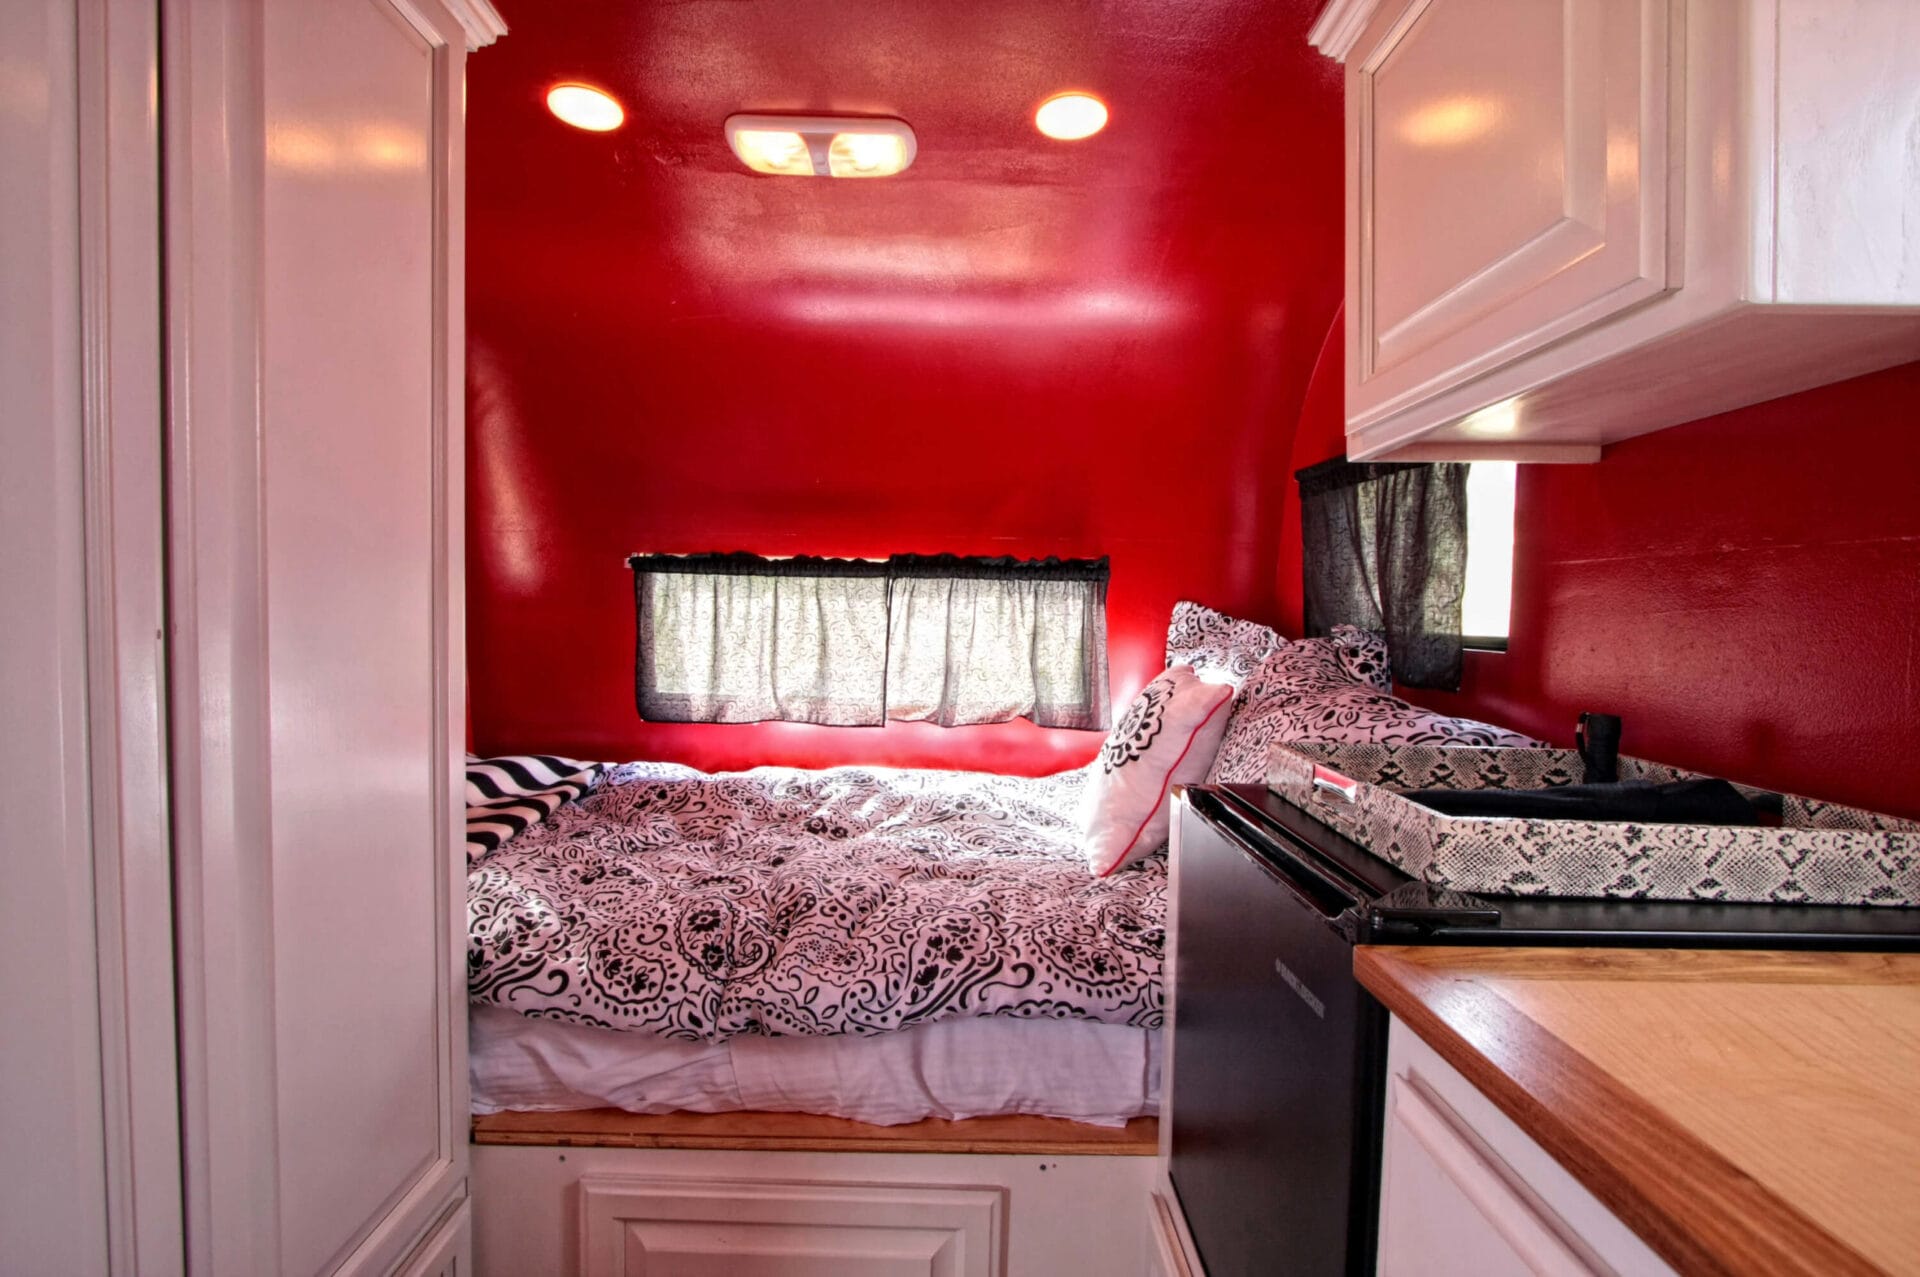 palm-canyon-borrego-springs-ca-92004-hound-dog-trailer-bedroom